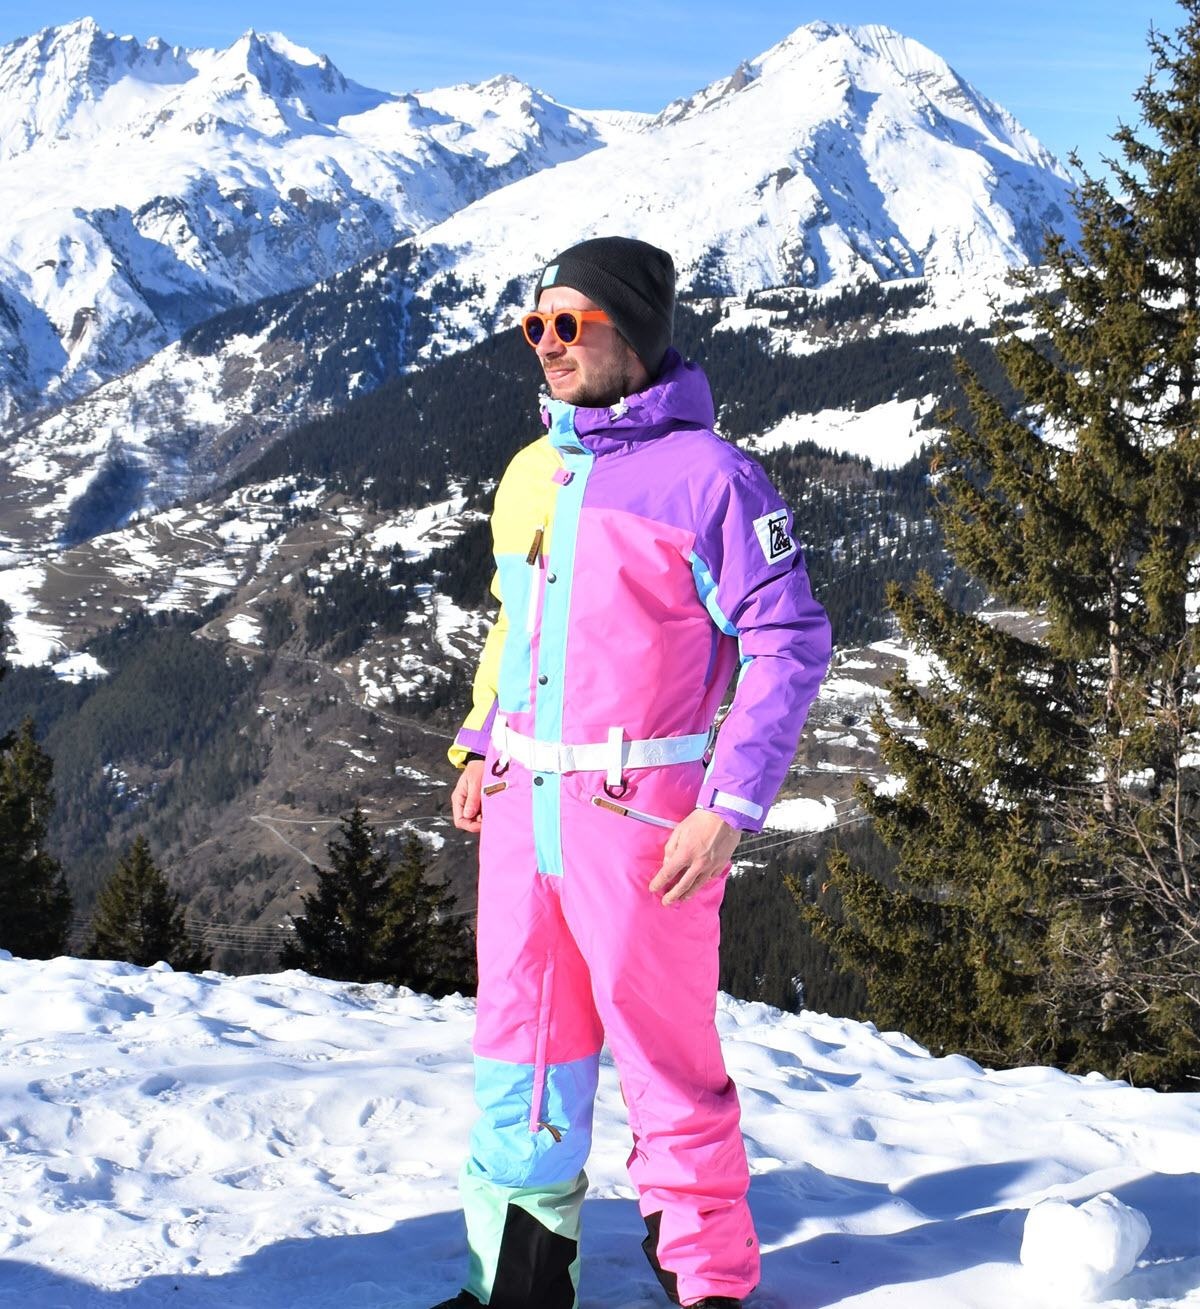 Onesies y trajes de esquí para hombres y mujeres  OOSC, Oneskee y trajes  de nieve 